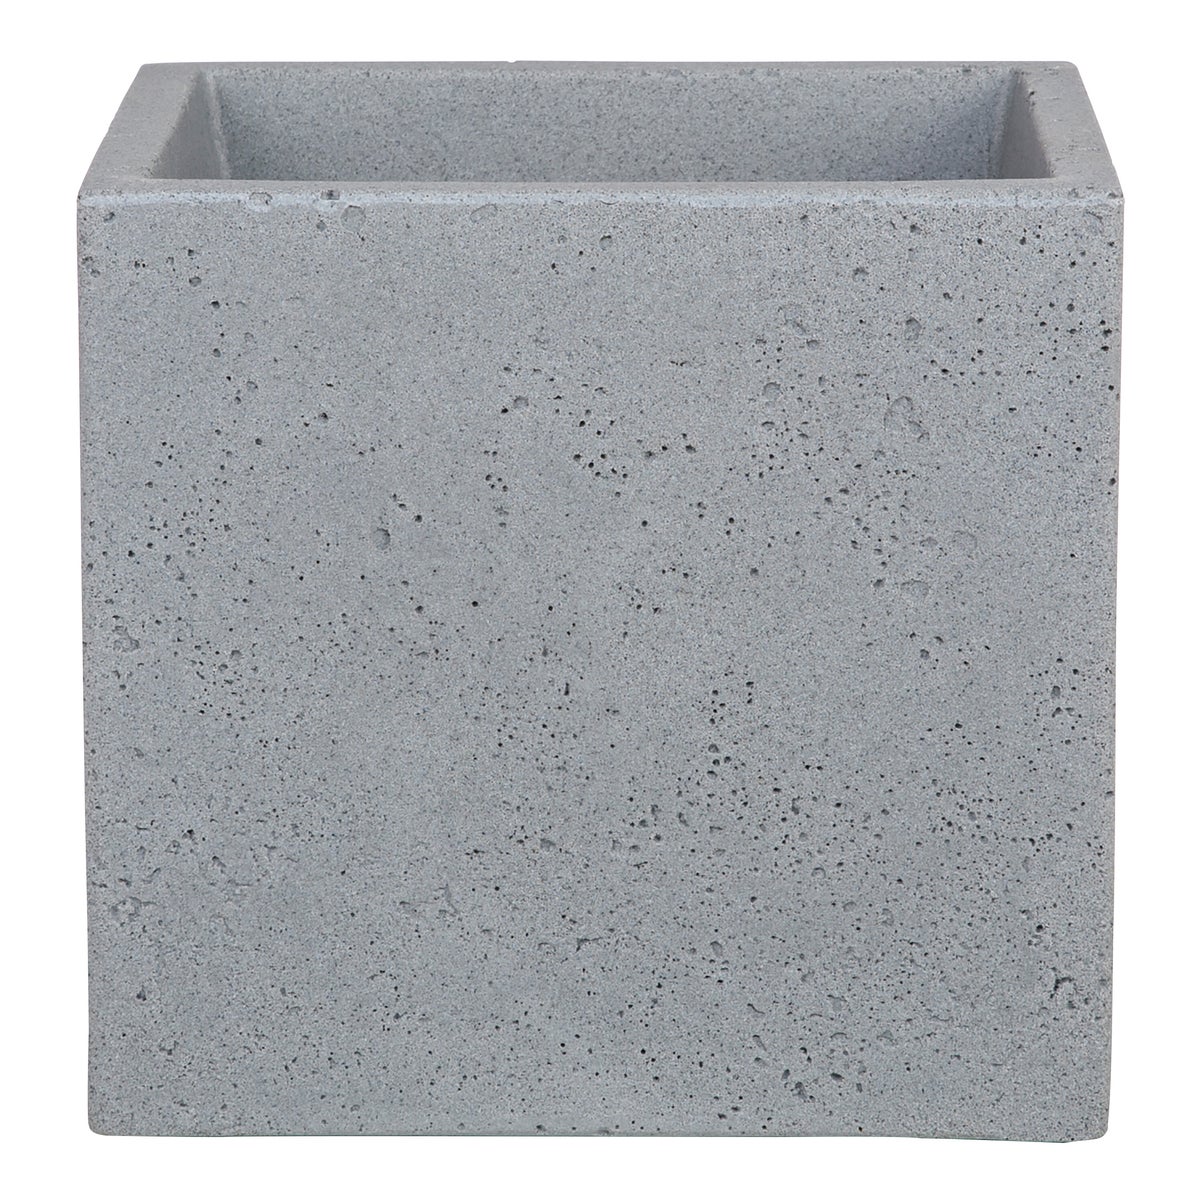 Scheurich C-Cube 30, Pflanzgefäß/Blumentopf/Pflanzkübel, quadratisch,  aus Kunststoff Farbe: Stony Grey, 28,5 cm Durchmesser, 27 cm hoch, 18 l Vol.